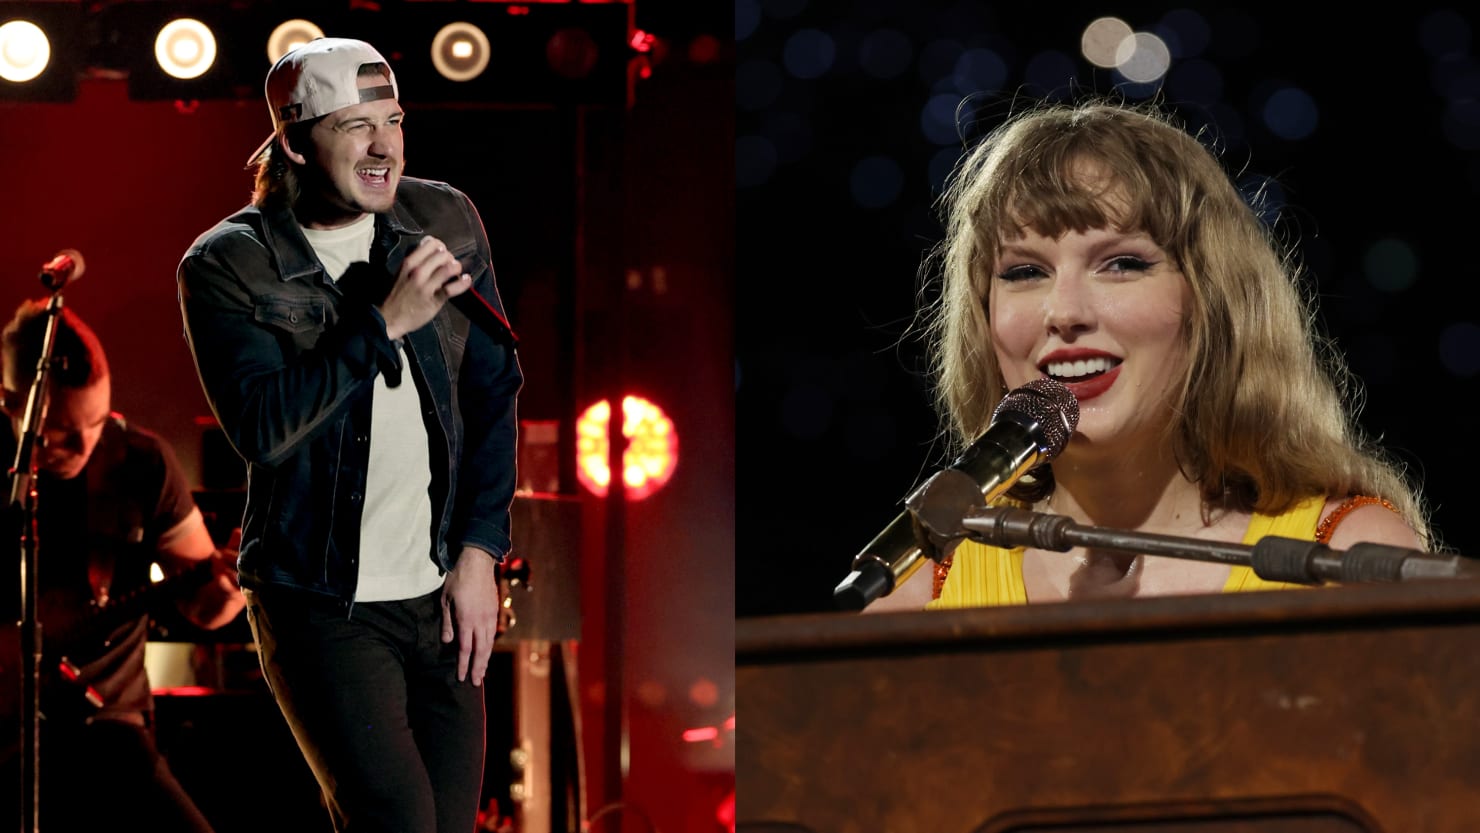 Morgan Wallen Fans Boo Taylor Swift After Singer’s Crowd-Size Joke – DNyuz